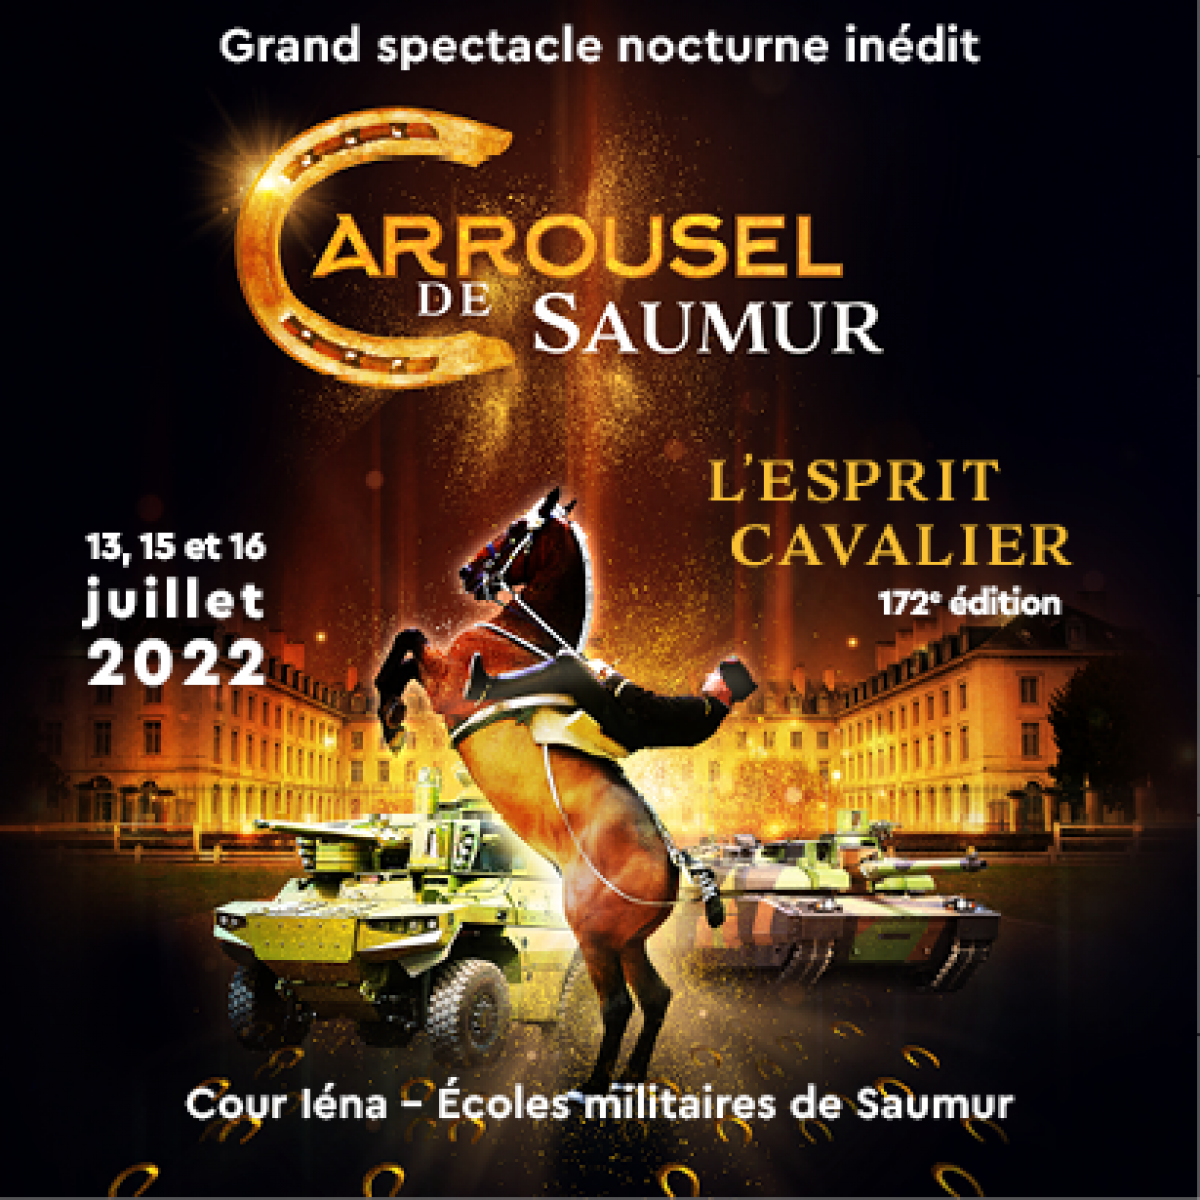 Avec la participation du Cadre noir - Le Carrousel de Saumur